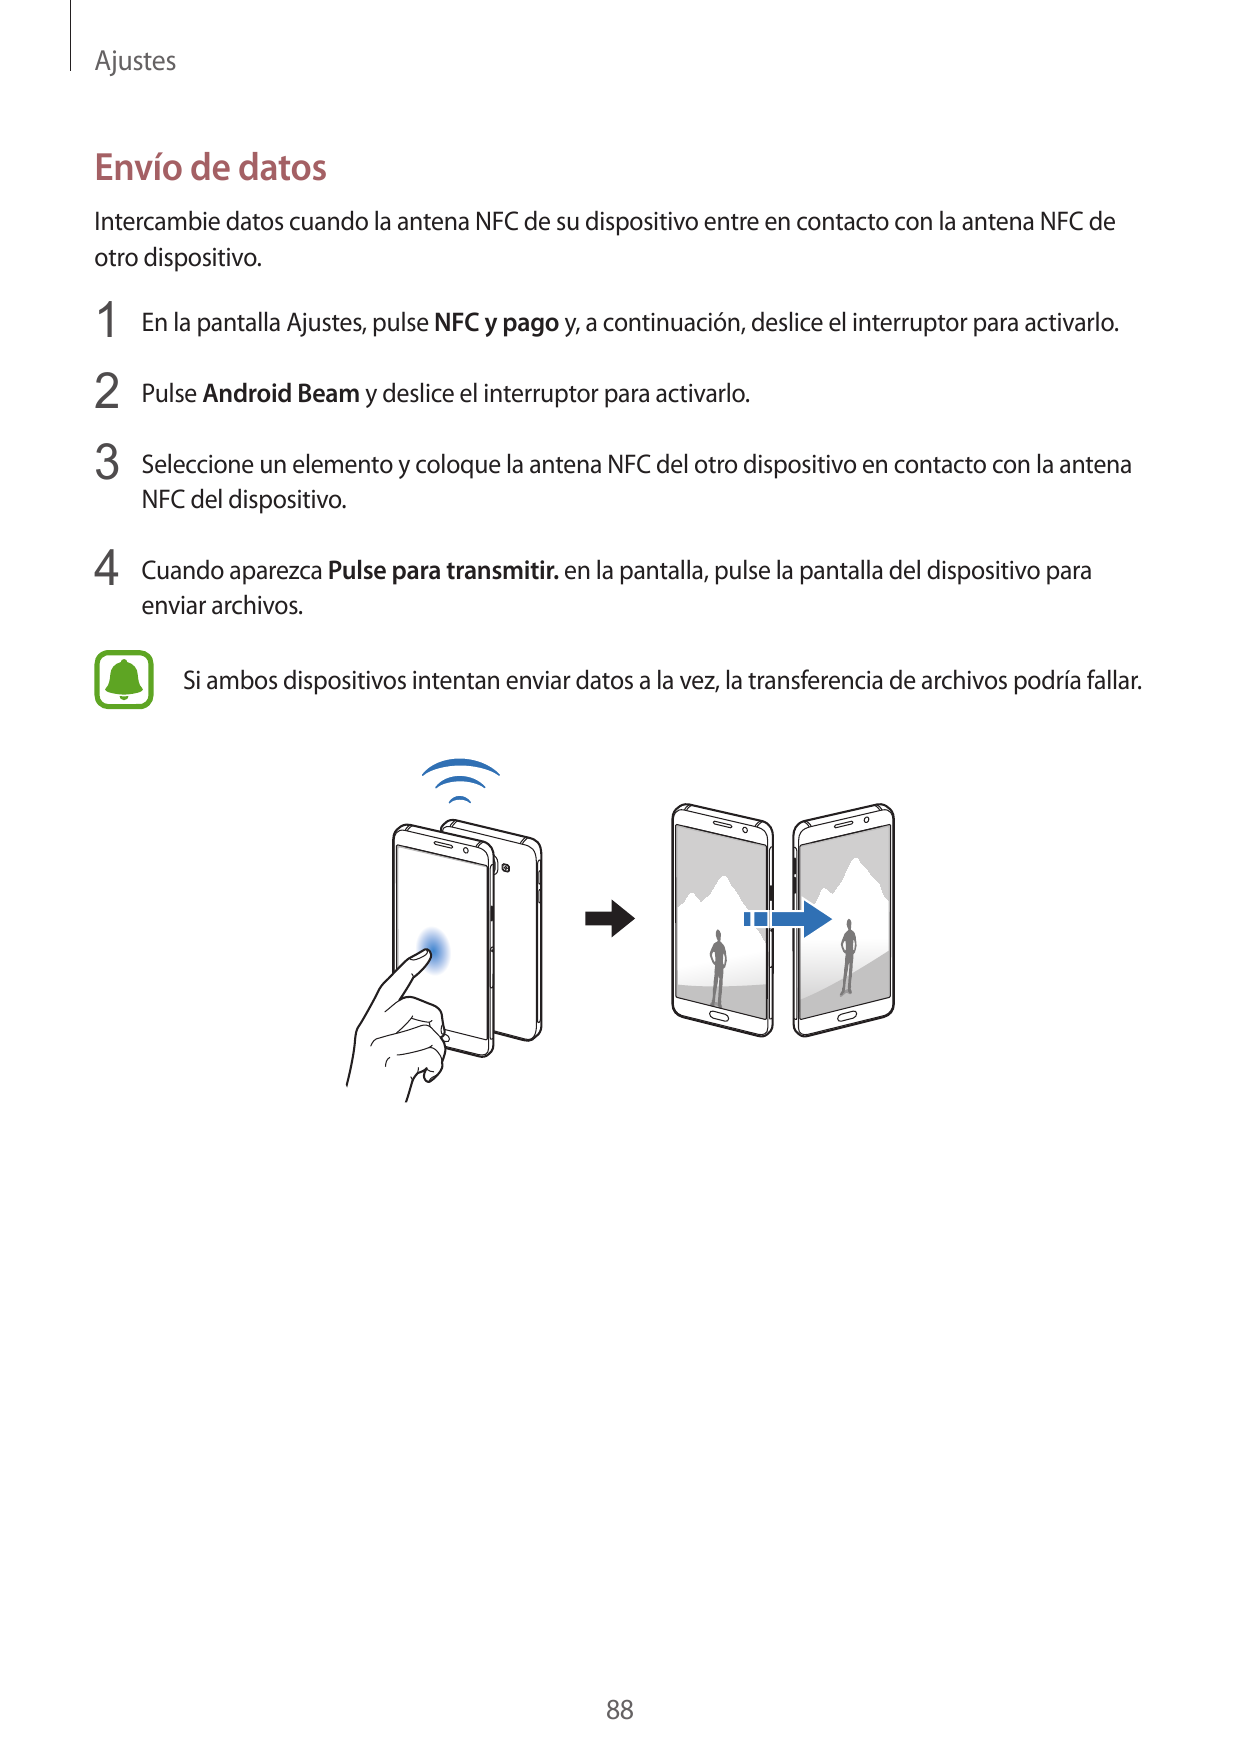 AjustesEnvío de datosIntercambie datos cuando la antena NFC de su dispositivo entre en contacto con la antena NFC deotro disposi